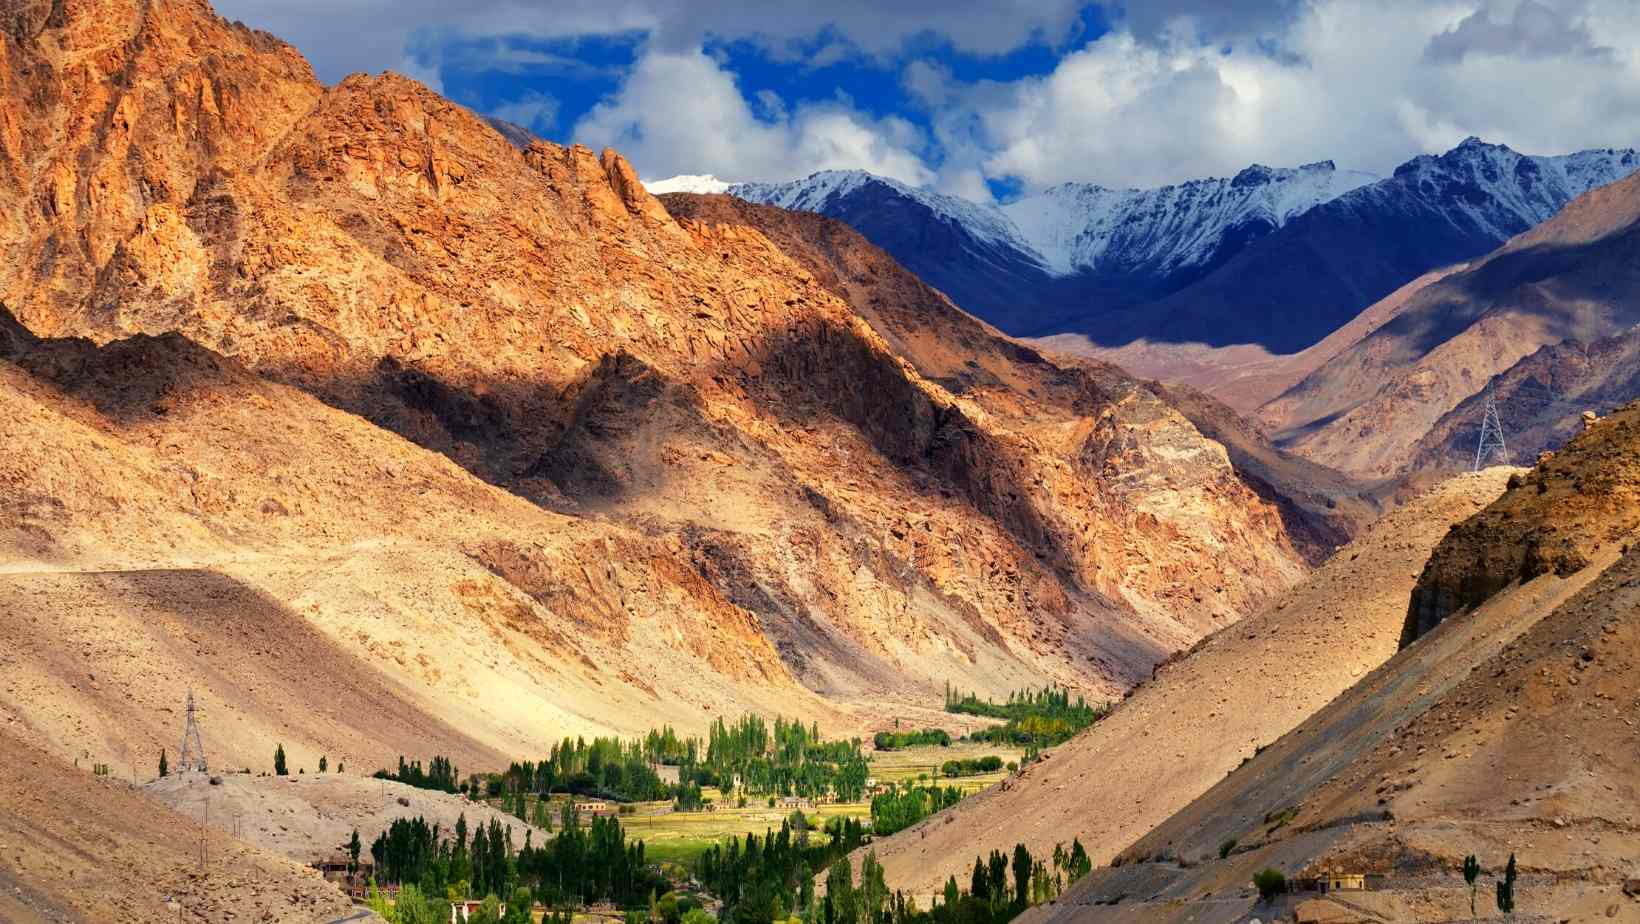 Leh Ladakh, The valleys of Kashmir